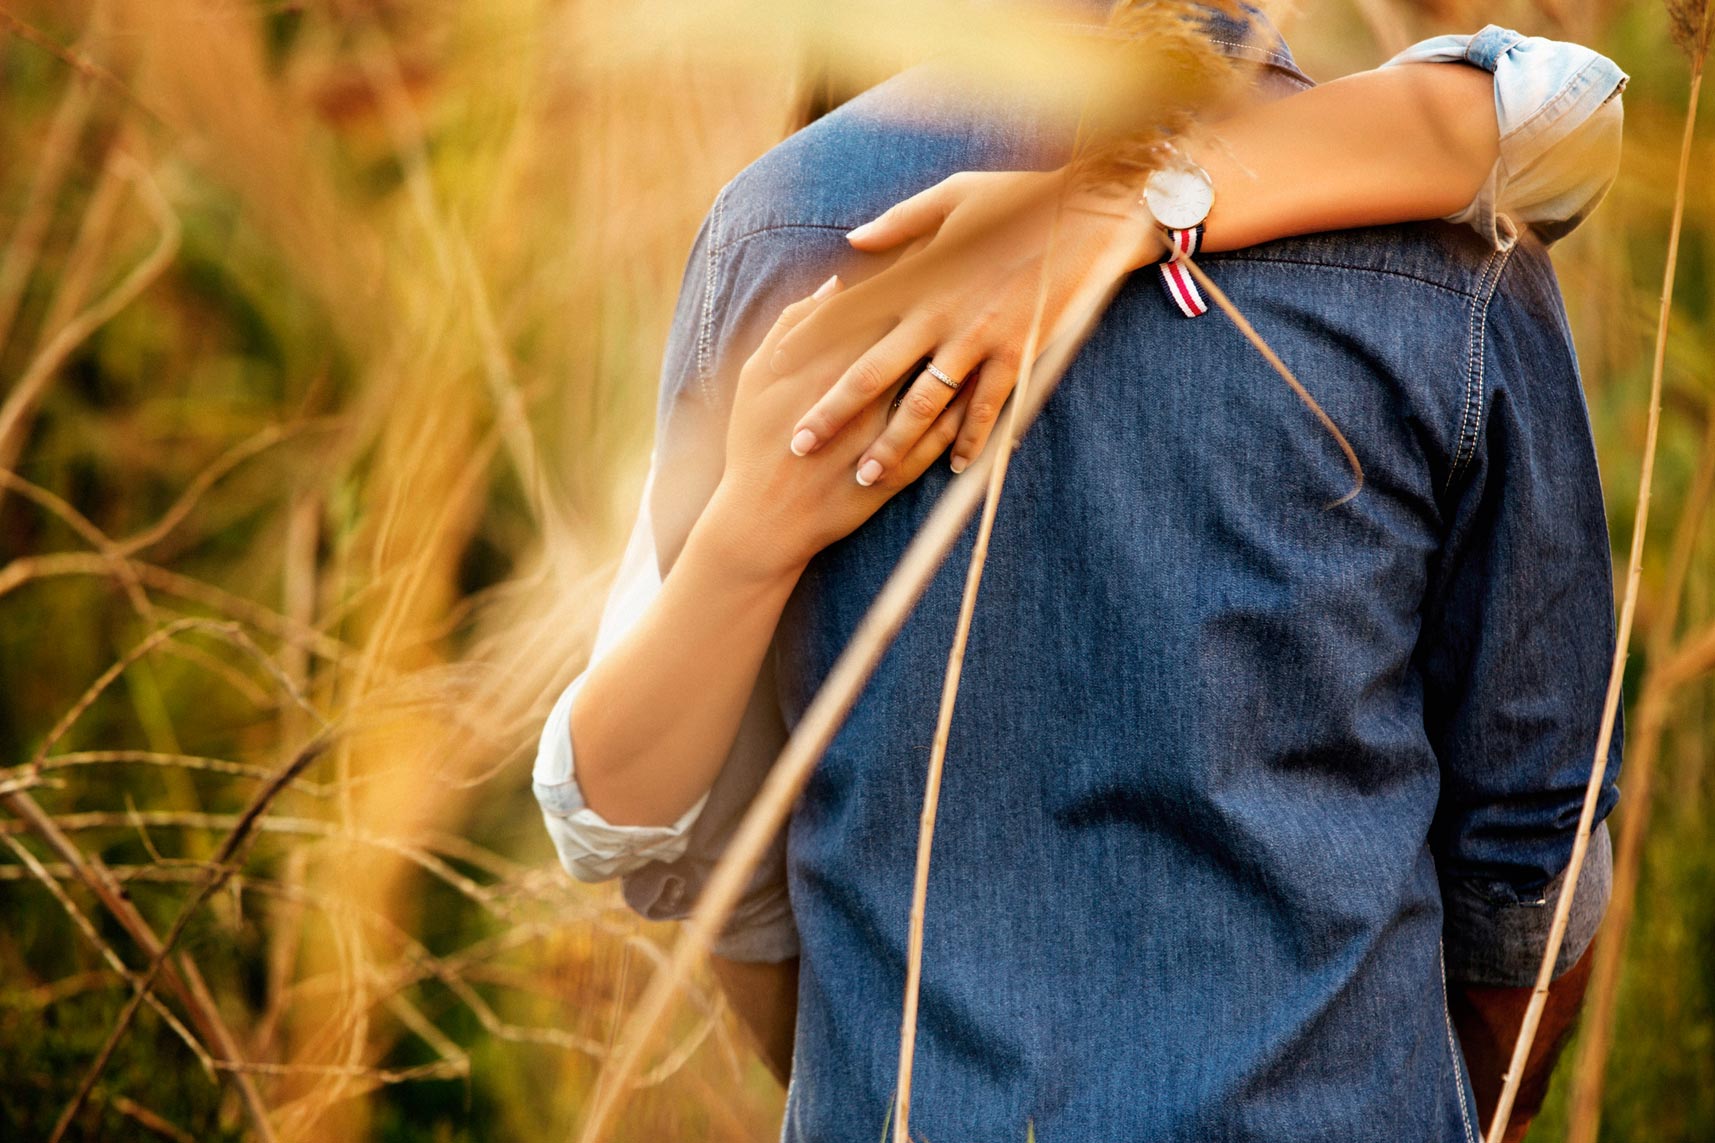 La novia abrazada a su novio y donde se puede ver su anillo de compromiso.